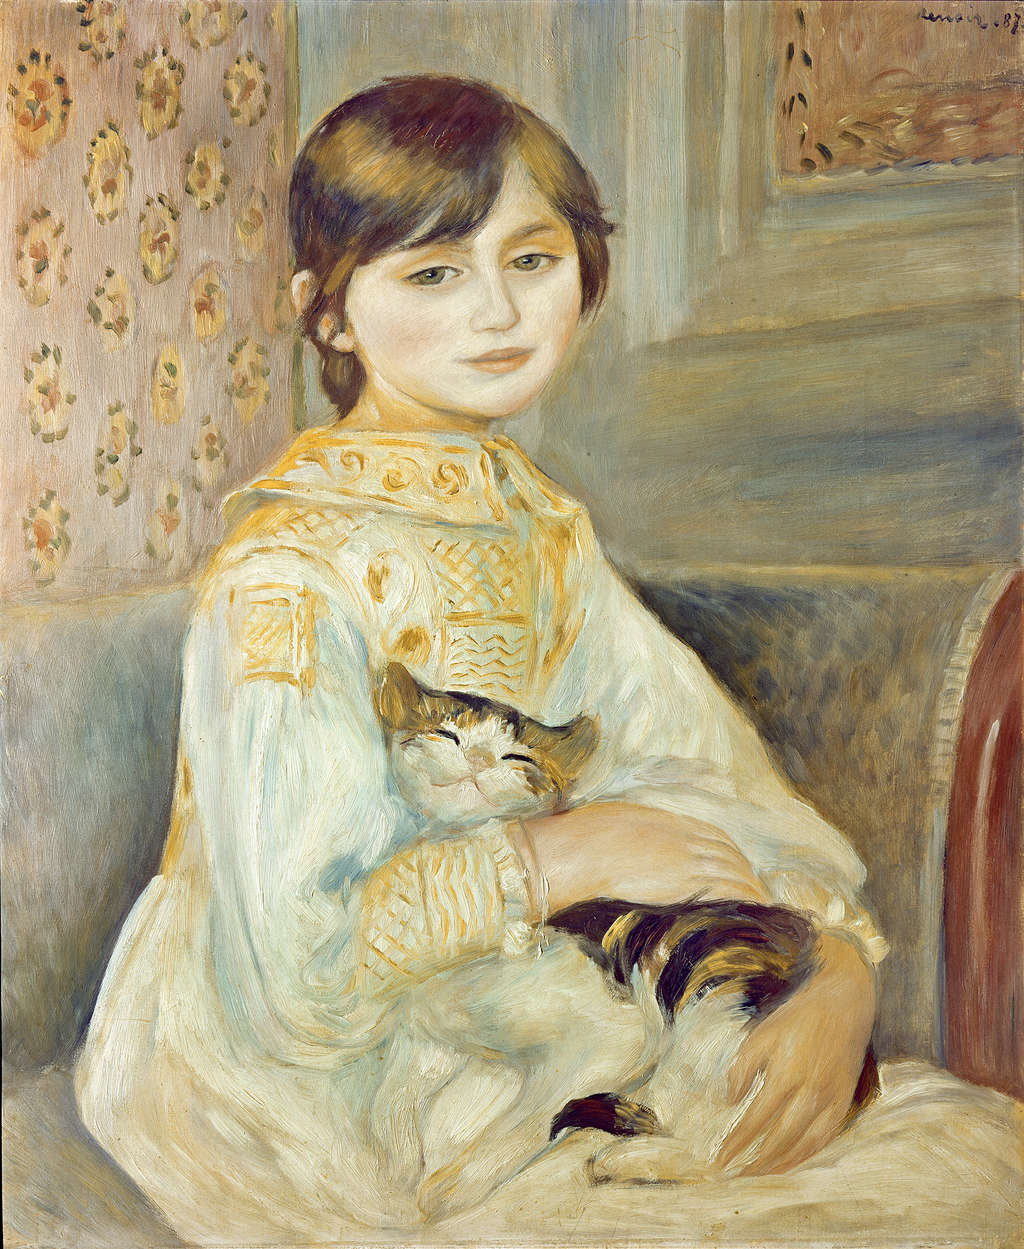             Papier peint "Mademoiselle Julie au chat" de Pierre Auguste Renoir
        